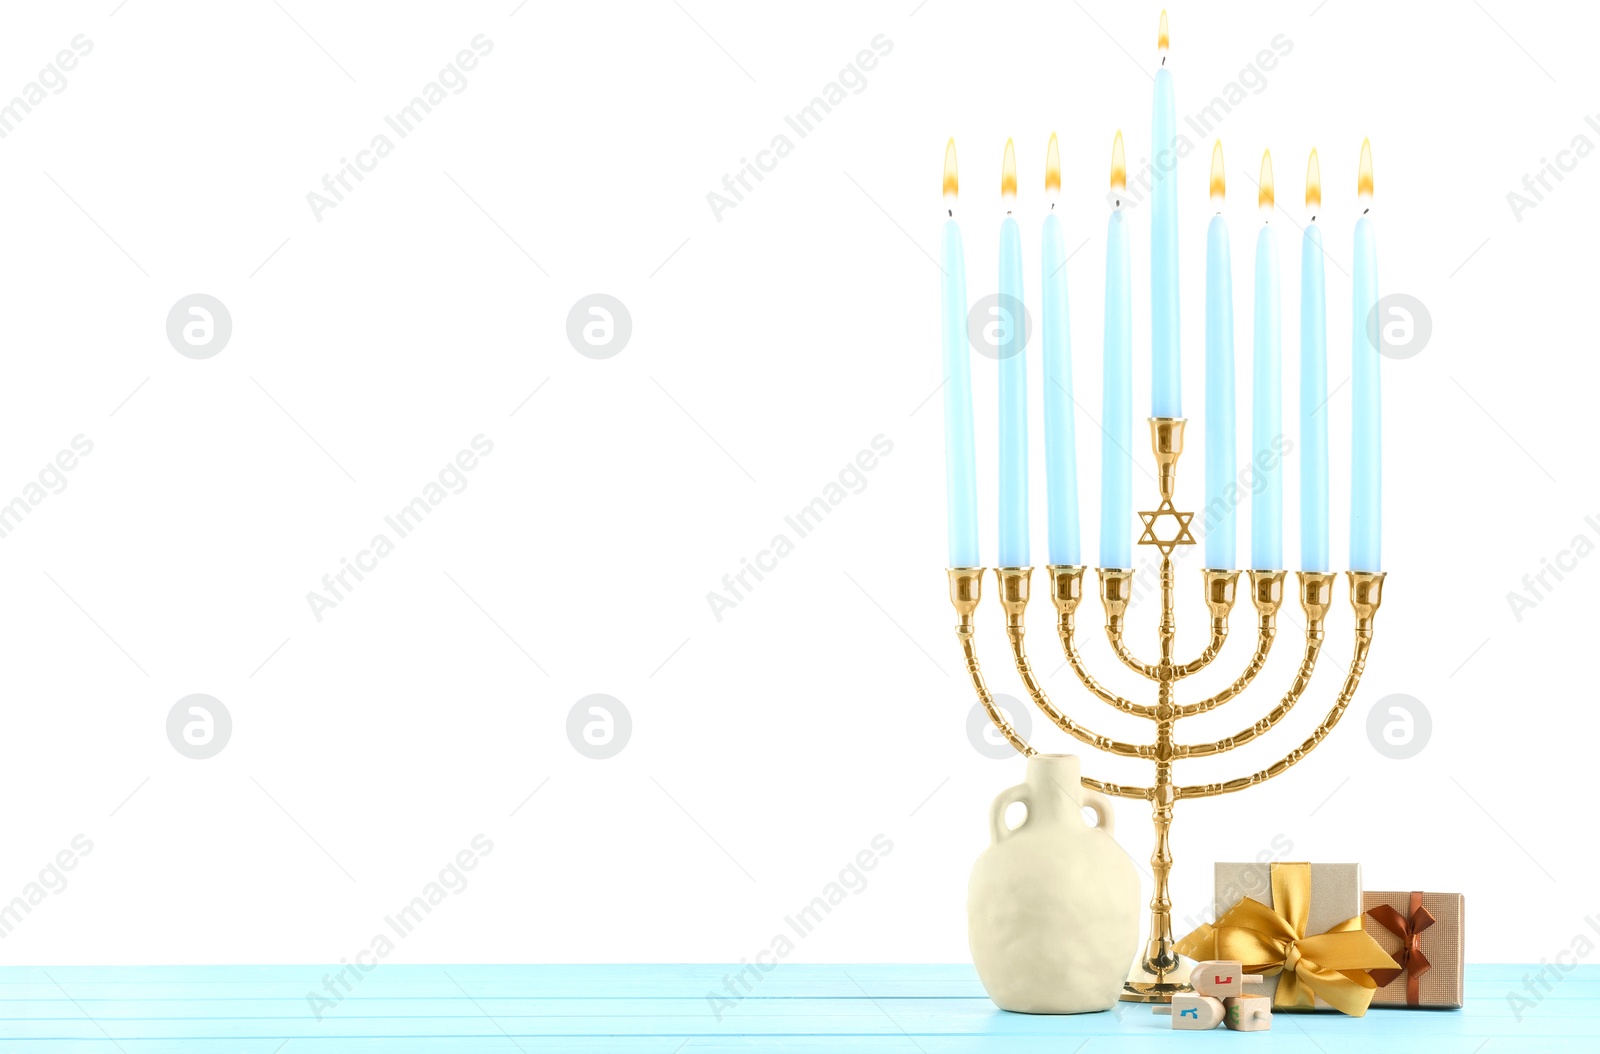 Photo of Hanukkah celebration. Menorah, dreidels, vase and gift boxes on light blue wooden table against white background